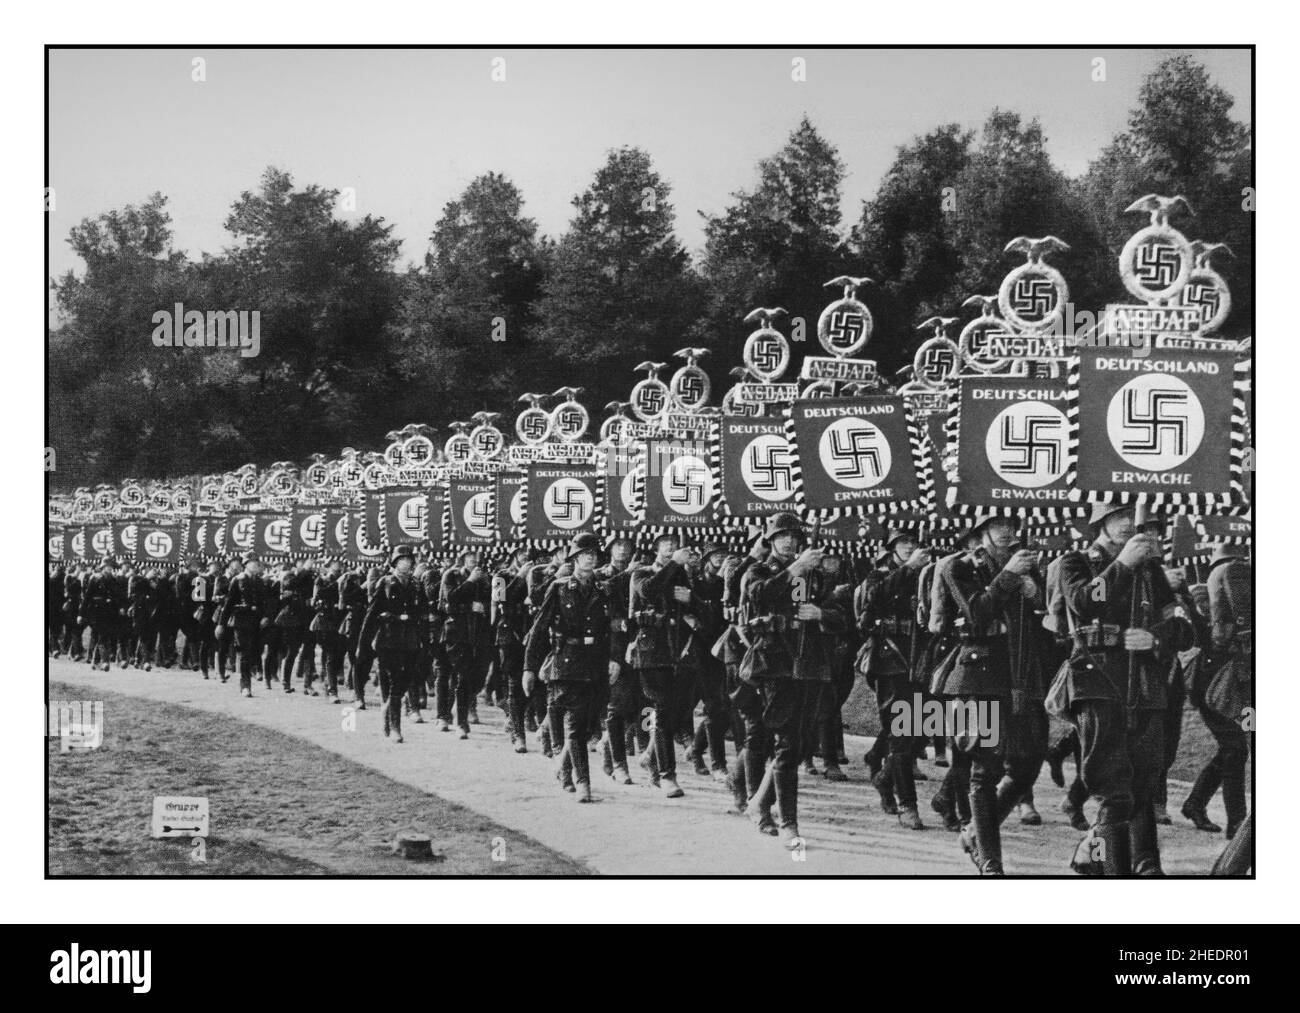 Les troupes SS nazies tenant des bannières avec NSDAP Deutschland Erwache 'Germany awakes 'Victory Congress' (V Imperial Party Congress) normes du Schutzstaffel au Reichsparteitag, 1936 - à Nuremberg Parade Nuremberg Nuremberg Allemagne nazie Banque D'Images